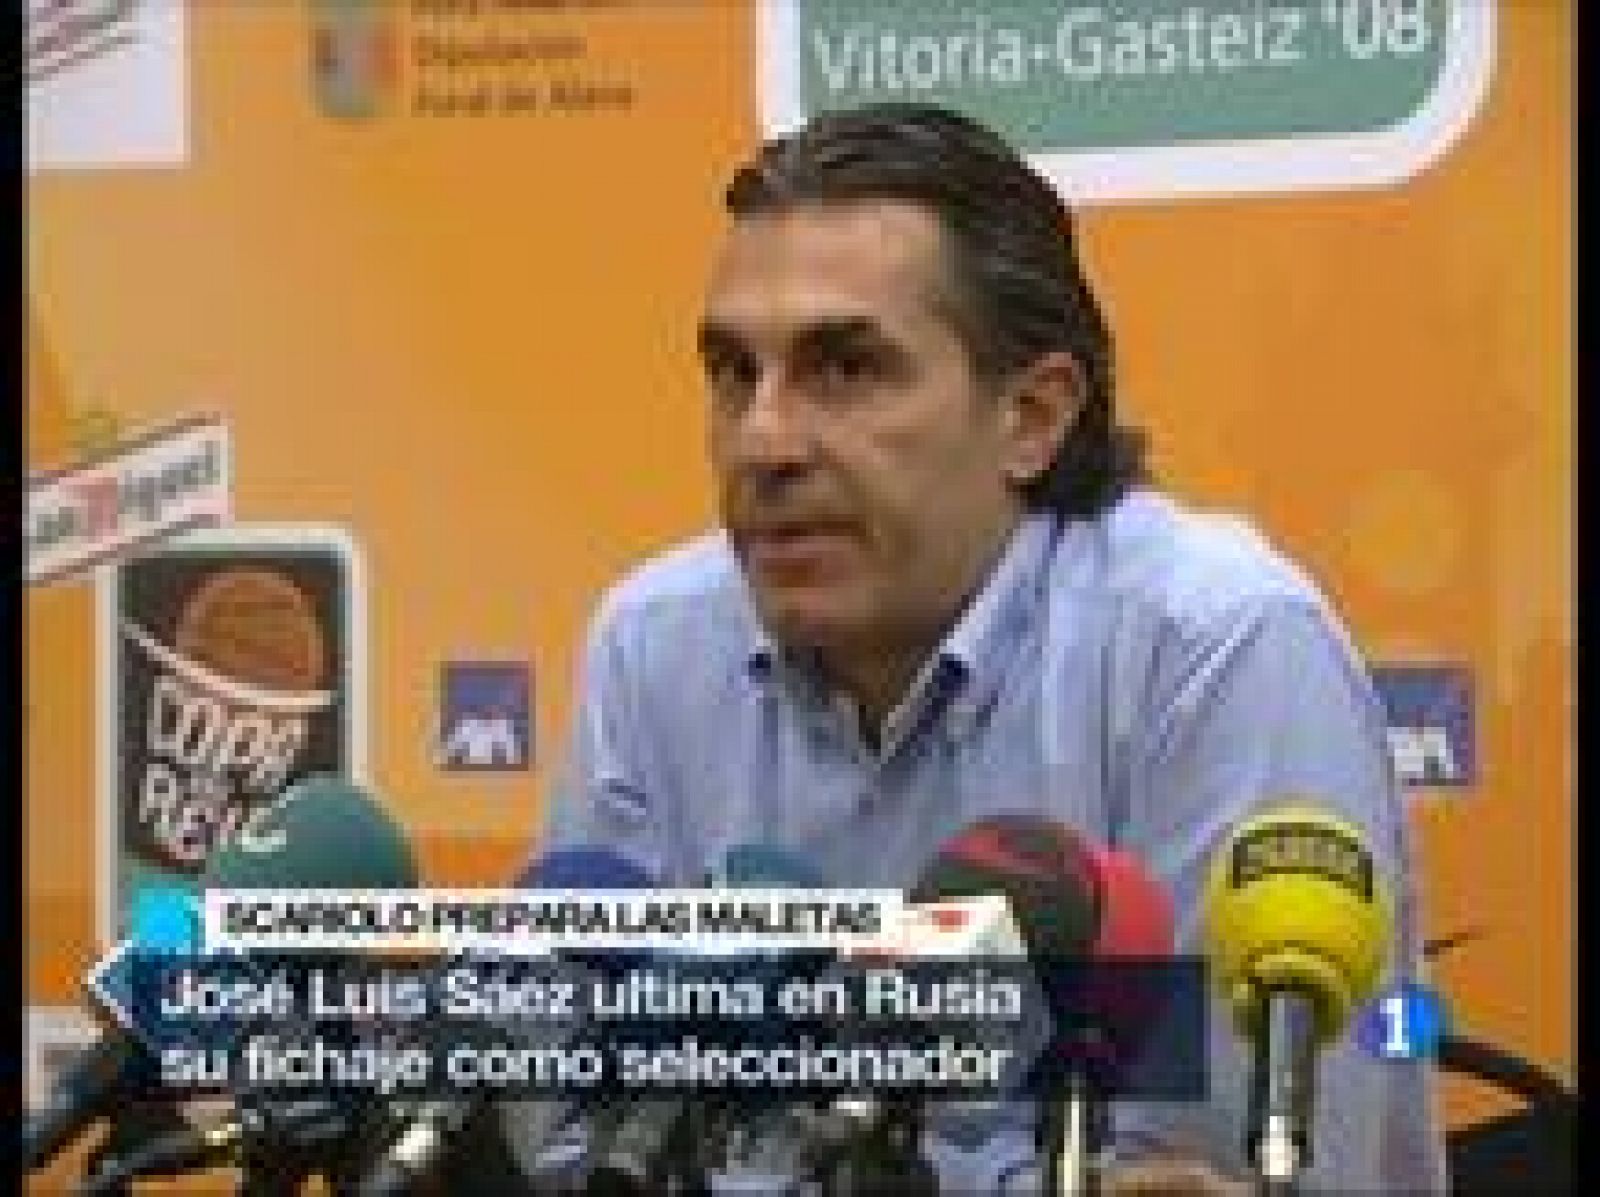 El presidente de la Federación española de Baloncesto, Jose Luis Sáez, ultima en Rusia el fichaje de Sergio Scariolo como nuevo seleccionador español. (03/02/09)  